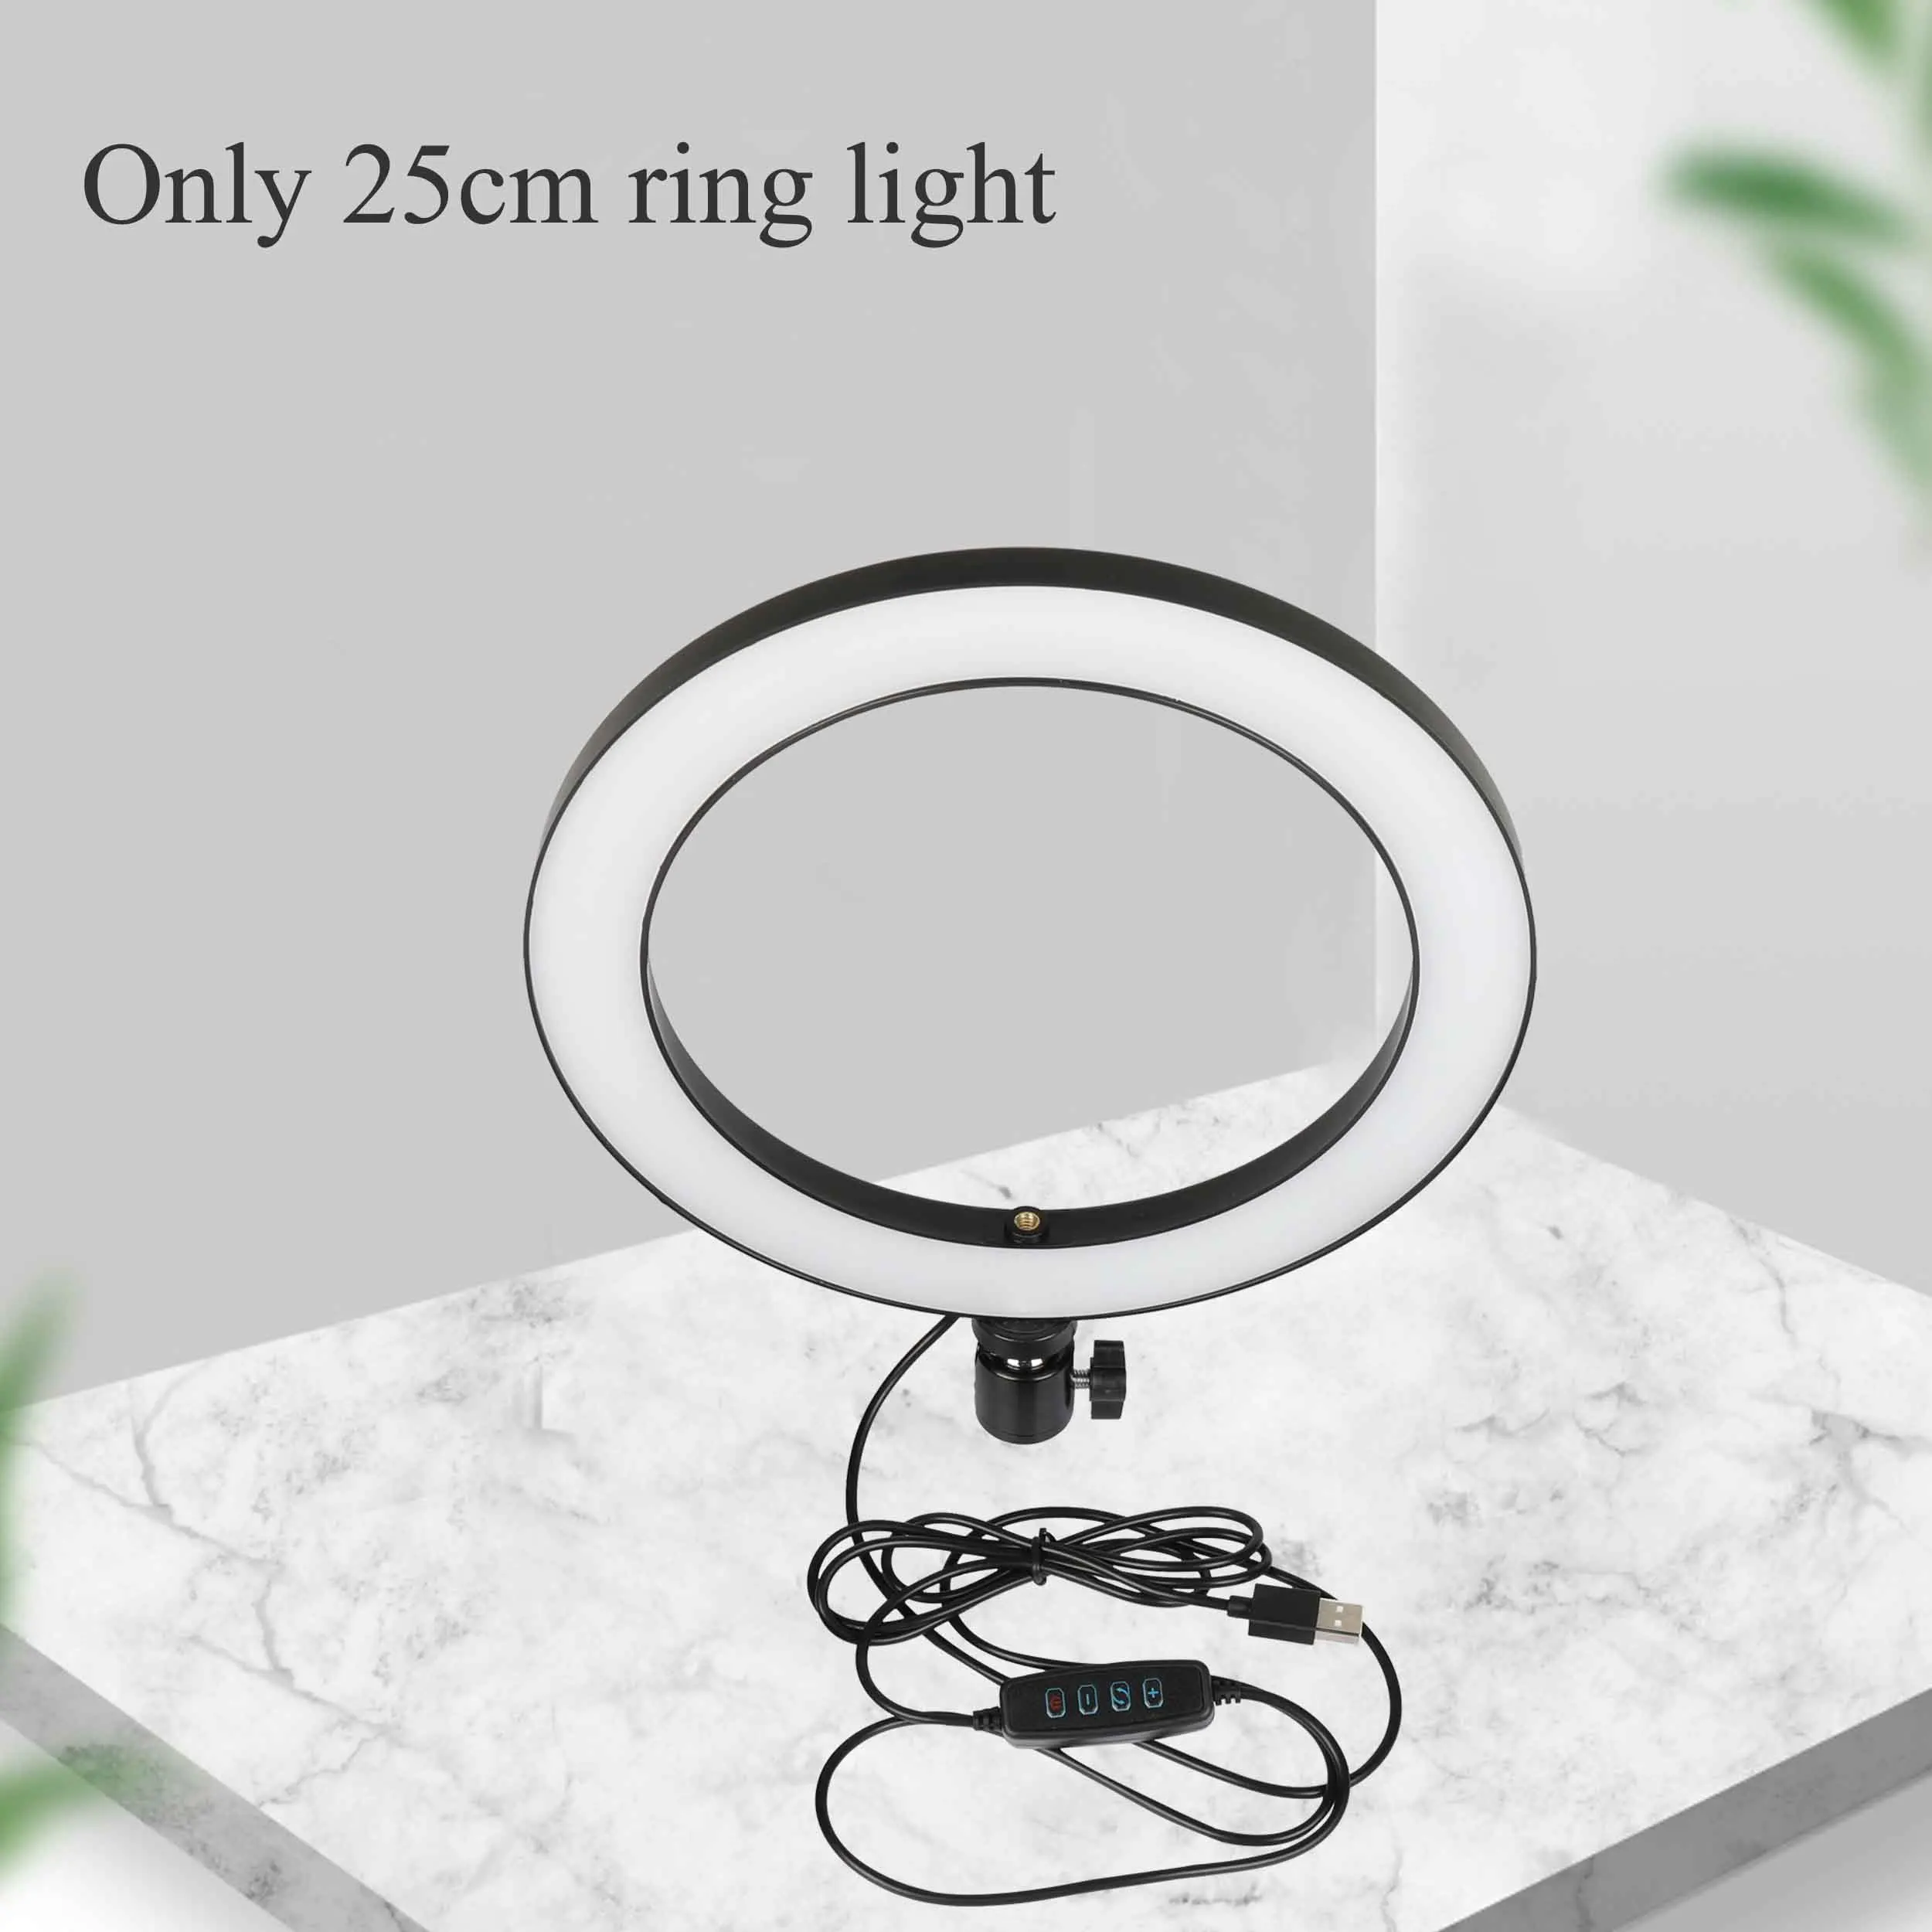 10 дюймов Фотография СВЕТОДИОДНЫЙ селфи кольцо светильник USB зарядка Камера для мобильной фотосъемки лампа 55/160 см штатив светильник для макияжа мобильного телефона в реальном времени - Цвет: Ring light